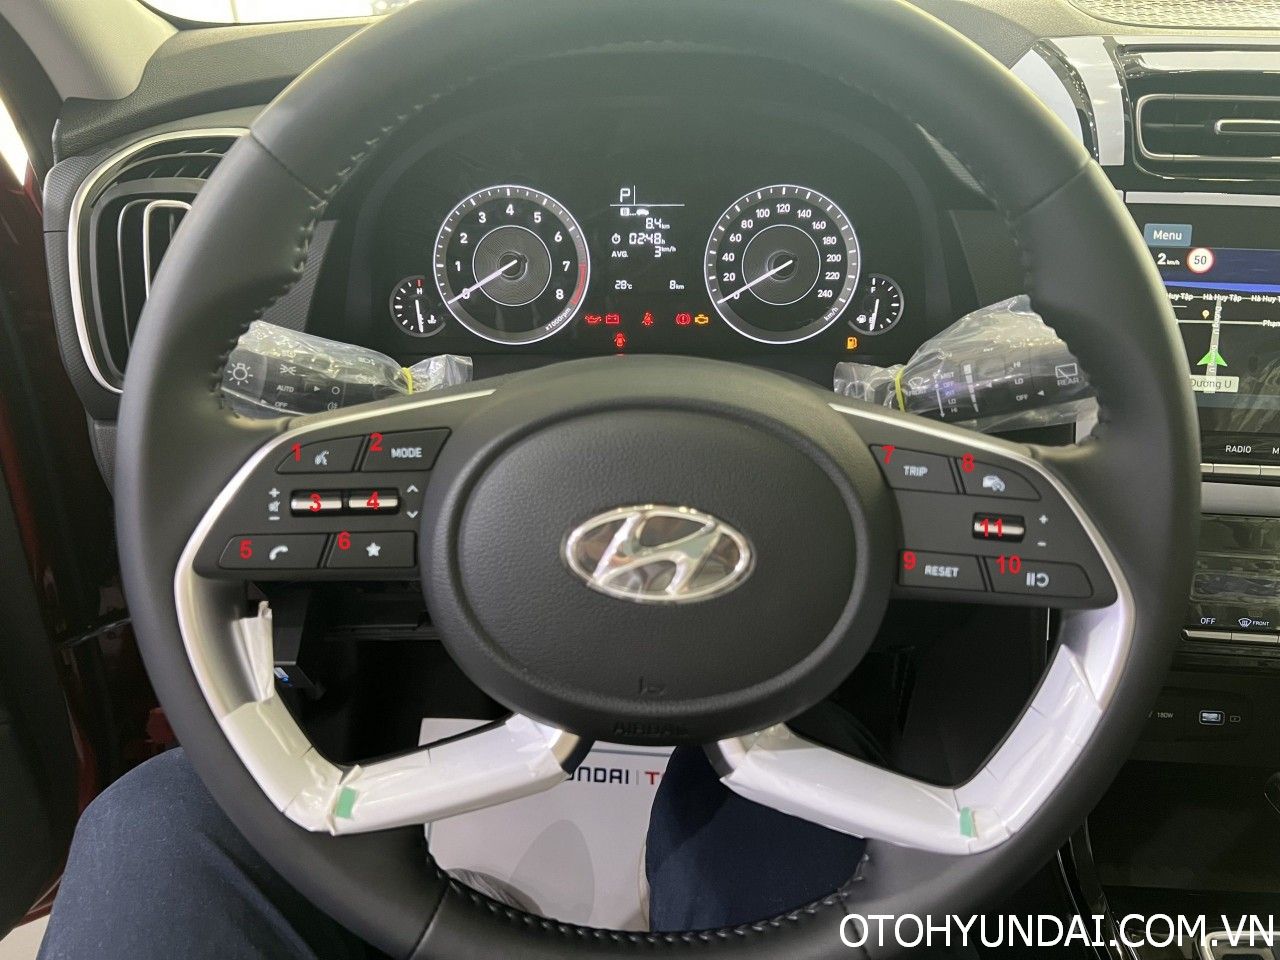 Hướng Dẫn Sử Dụng Xe Hyundai Creta | otohyundai.com.vn